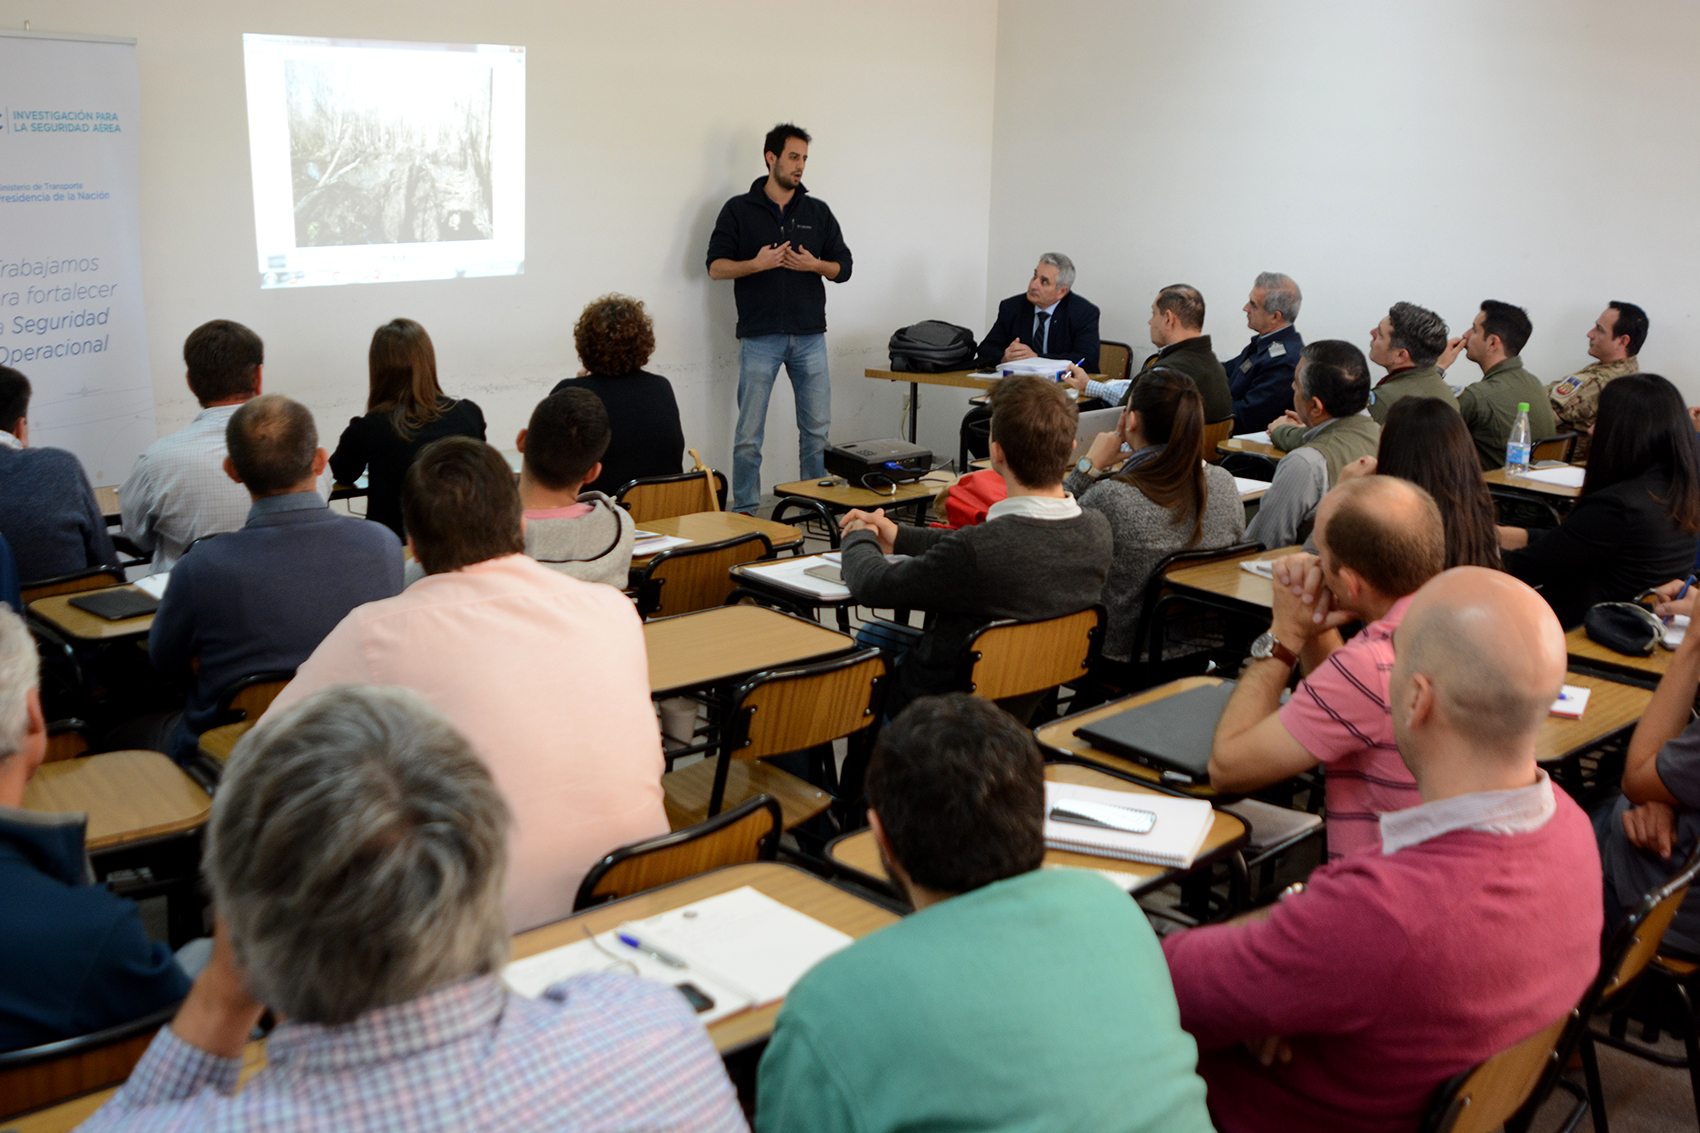 Imagen del aula con cursantes y el expositor, Esteban Maddonni